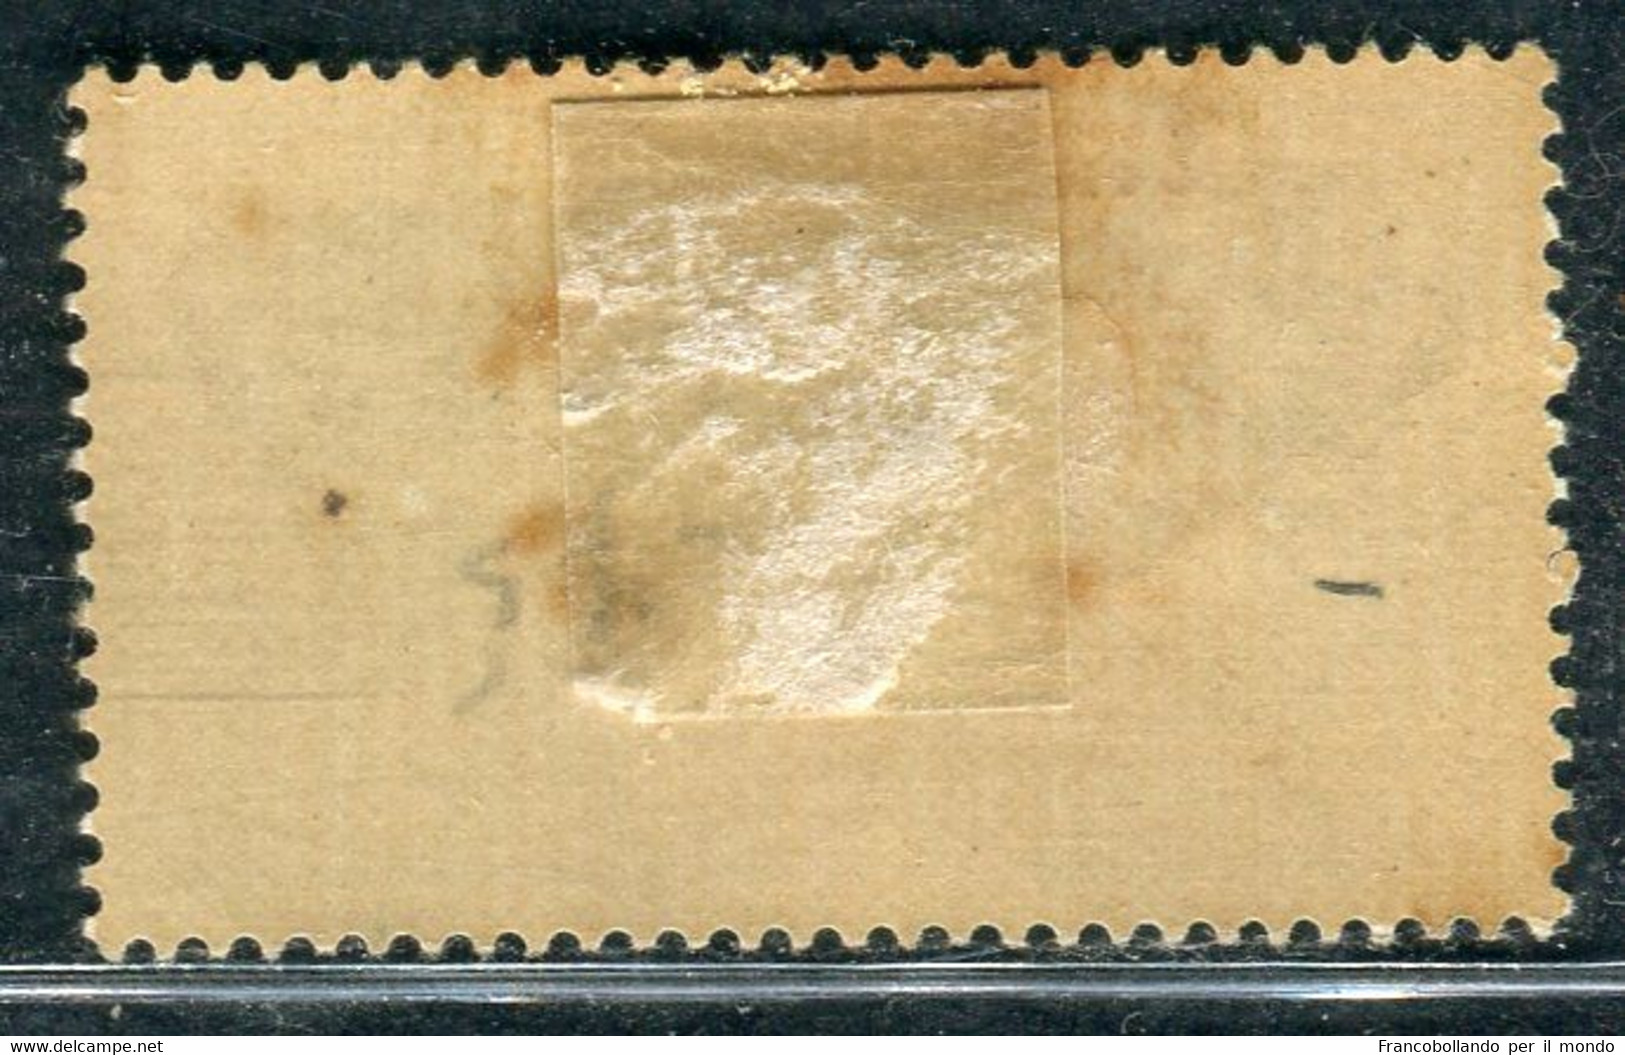 1930 Egeo Isole Stampalia 20 Cent Serie Ferrucci MH Sassone 12 - Egée (Lipso)